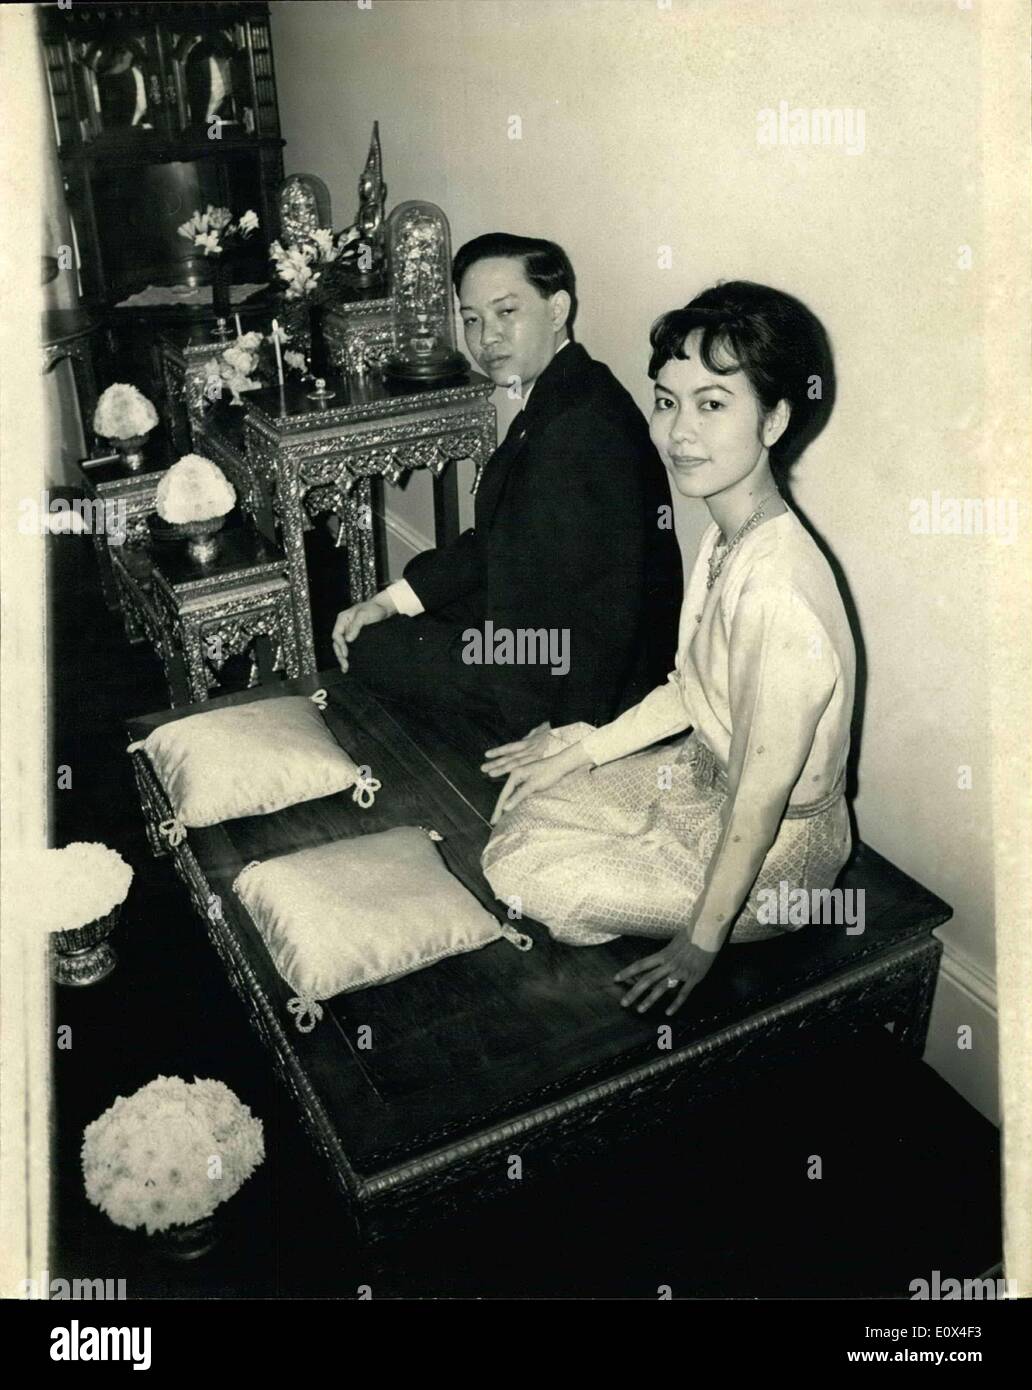 28. März 1965 - A Royal Wedding in London - siamesische Prinz Marries bei einer traditionellen buddhistischen Zeremonie: PrinceRabobongse Rabishadna, ein Cousin des Königs von Siam, heiratete heute 24 jährige Sirim Serthavatch, ein Musikstudent, der in einen anderen Zweig der königlichen Familie, auf eine traditionelle buddhistische Zeremonie gehört in der thailändischen Botschaft in London statt. Das Paar traf sich während seines Studiums an amerikanischen Universitäten Stockfoto